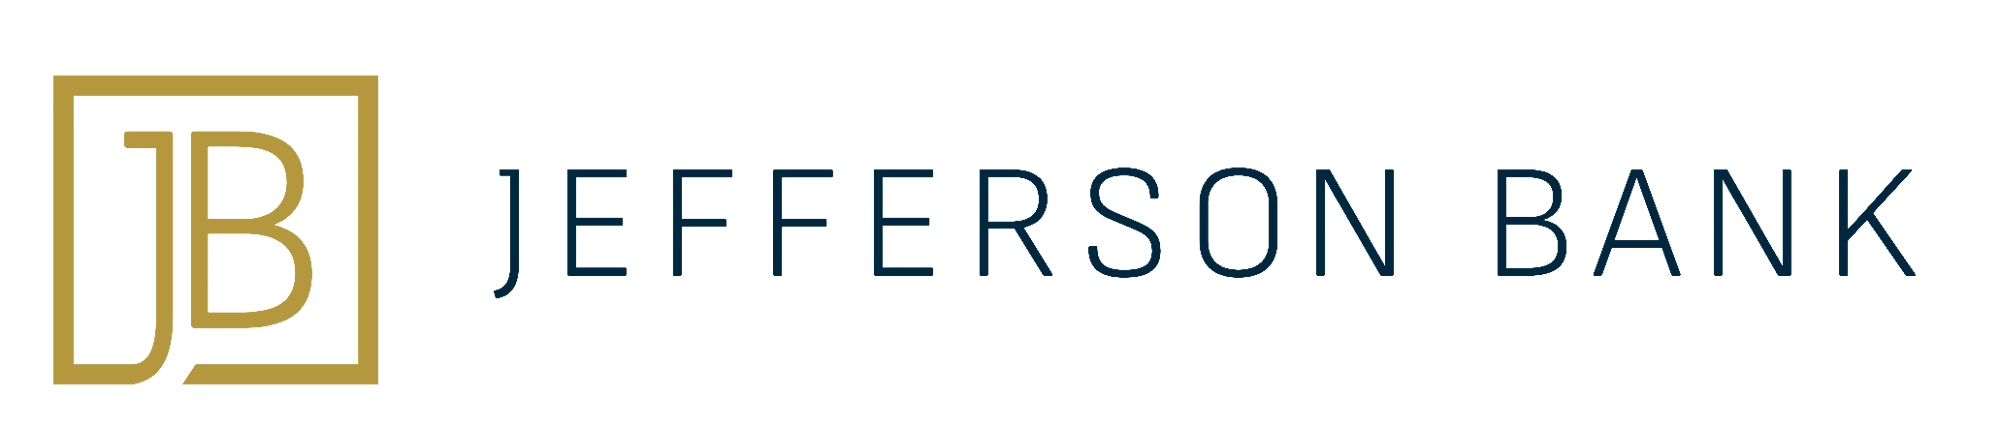 jefferson-bank-logo